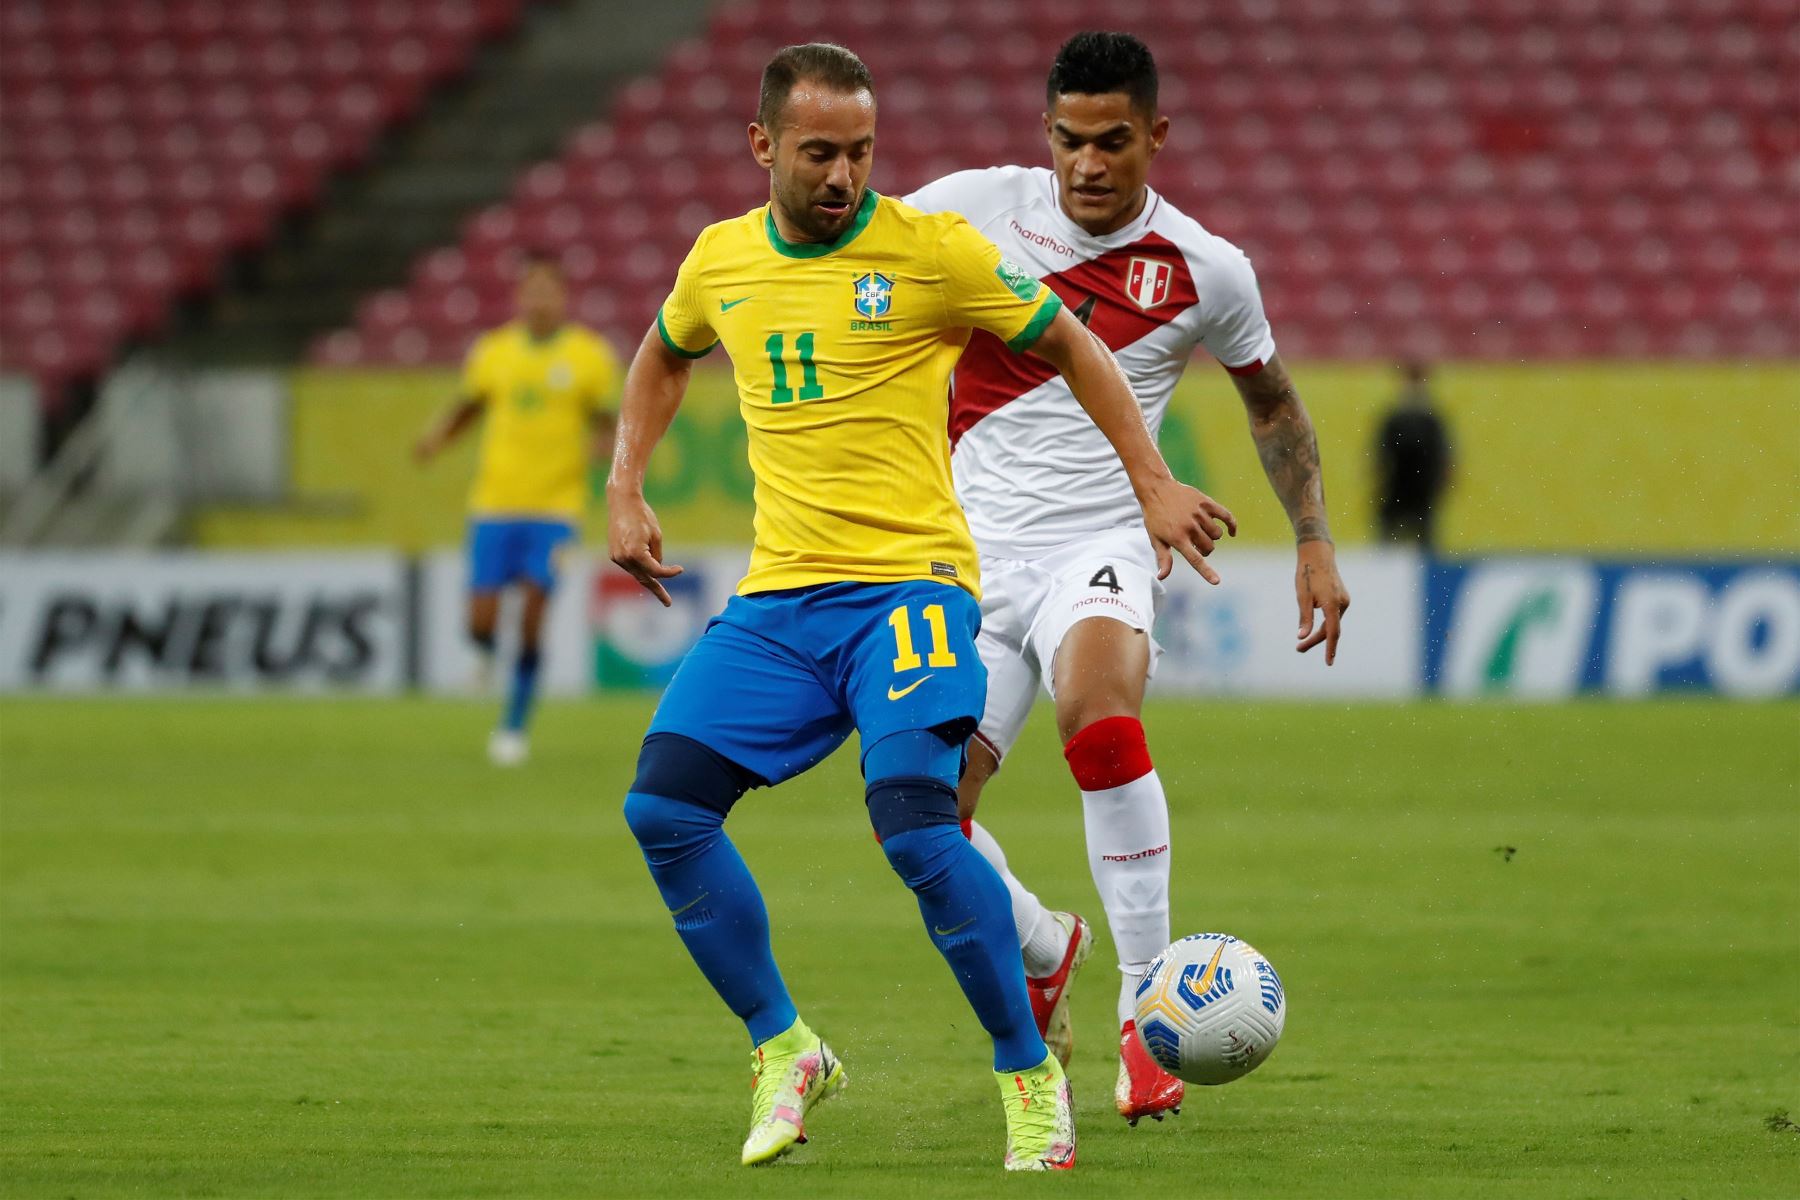 Everton Ribeiro de Brasil jugó un balón con Anderson Santamaría de Perú, antes del partido por las eliminatorias sudamericanas para el Mundial de Catar 2022 entre Brasil y Perú en la ciudad de Recife.
Foto: EFE